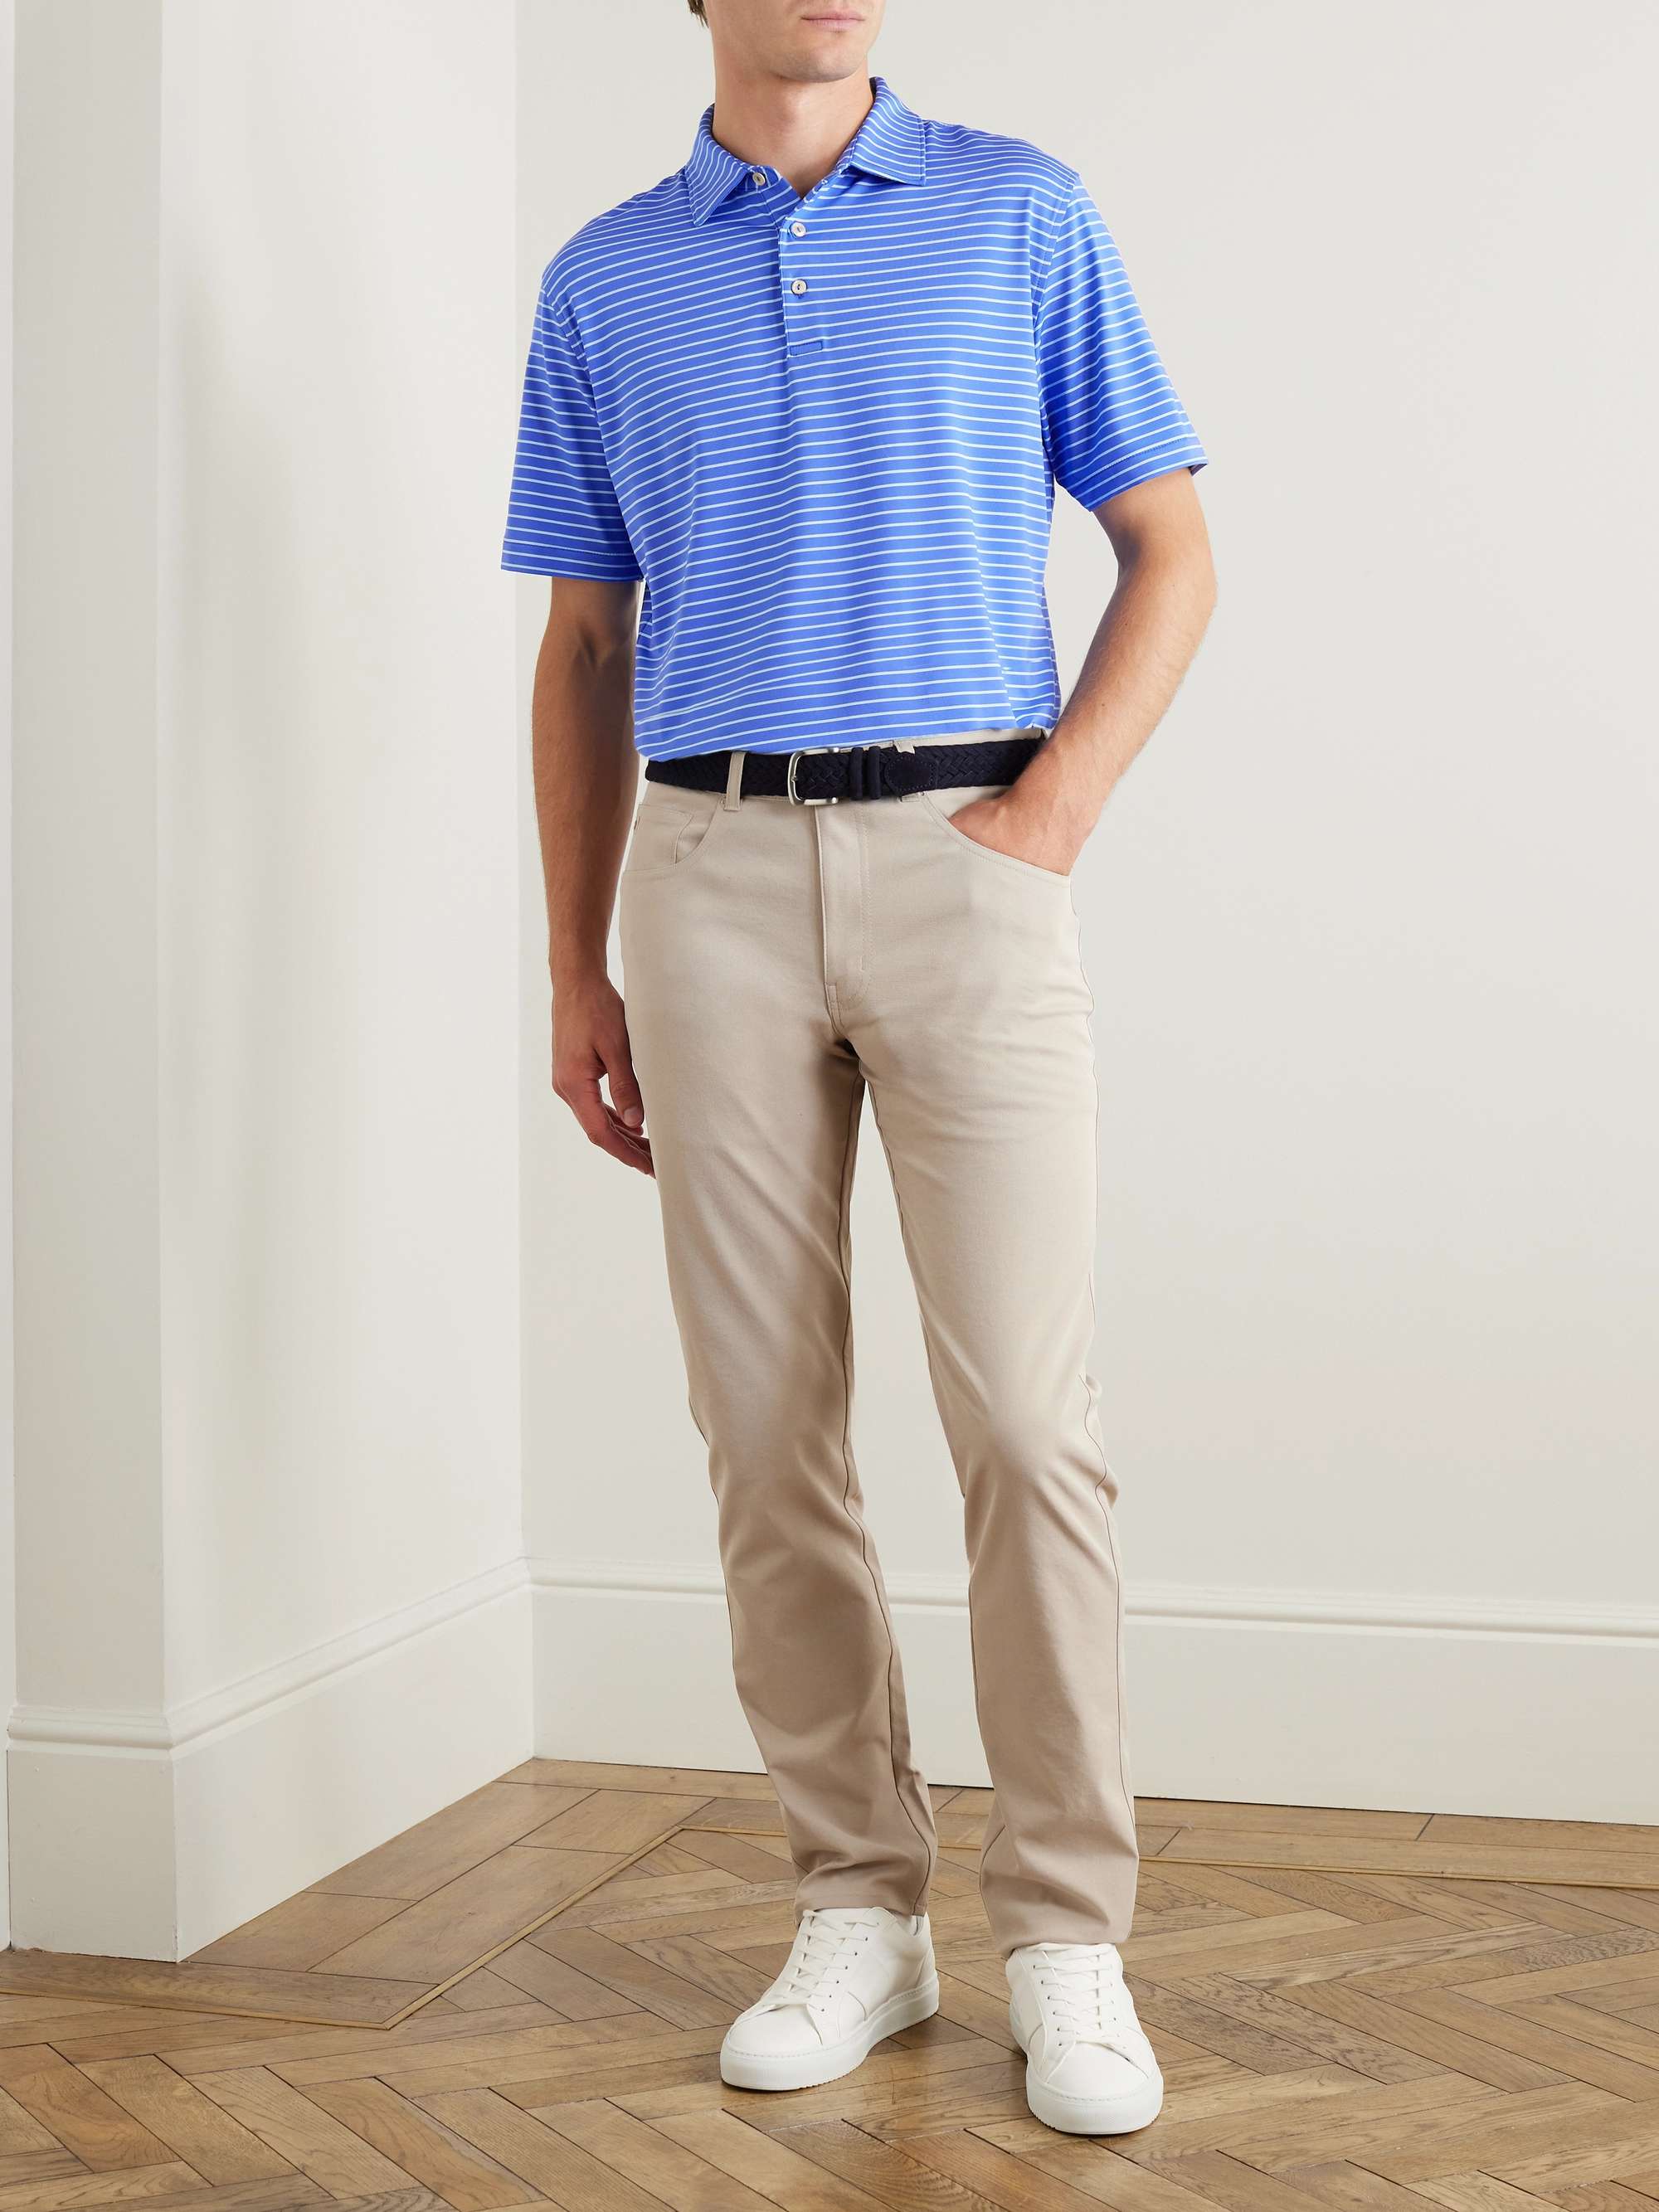 PETER MILLAR Drum Striped Tech-Jersey Golf Polo Shirt for Men | MR PORTER